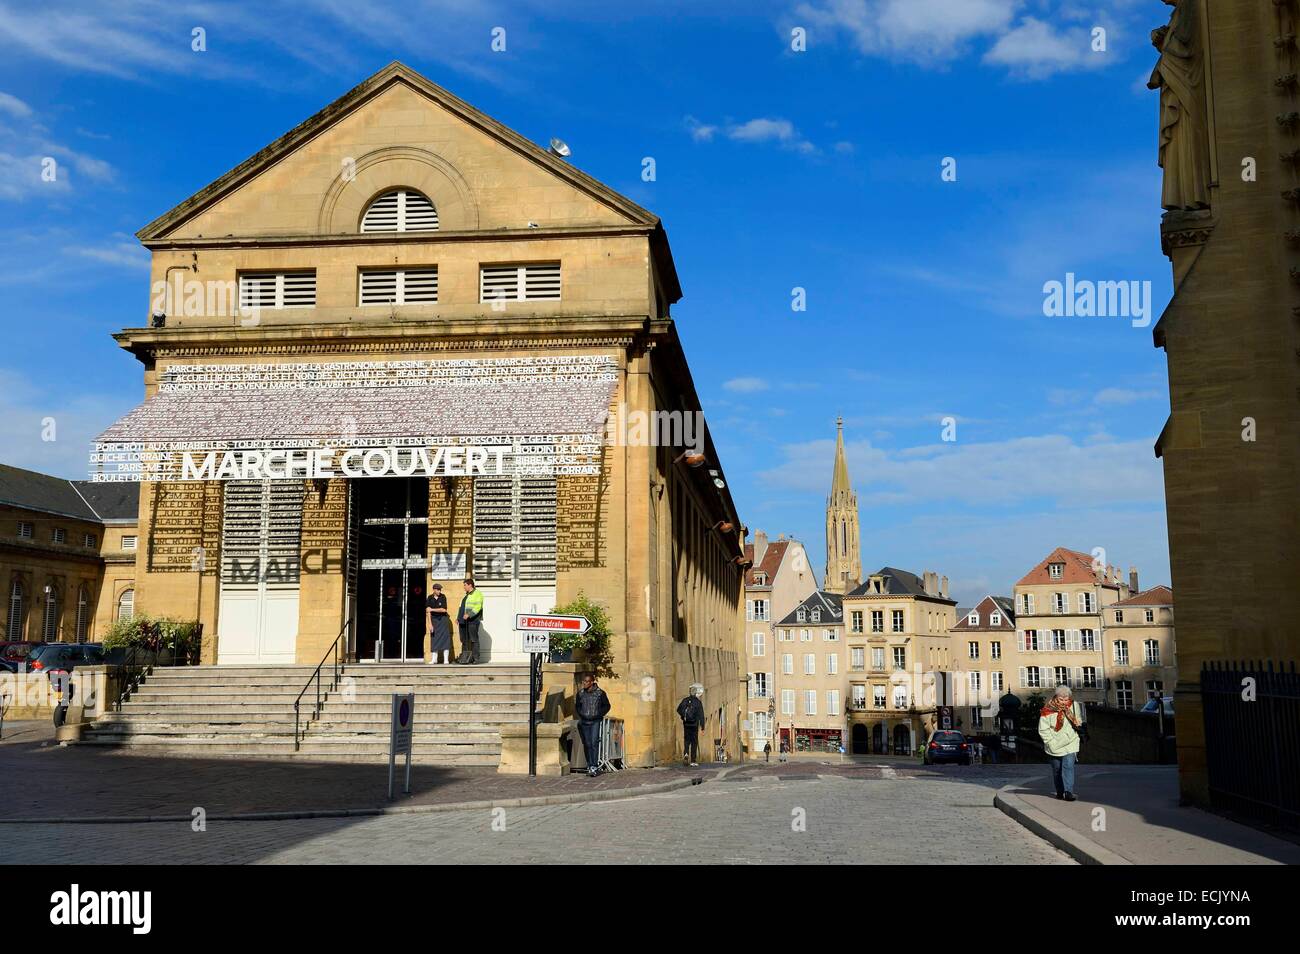 Francia, Moselle, Metz, el mercado cubierto es un market hall situado justo en el borde de la catedral Foto de stock